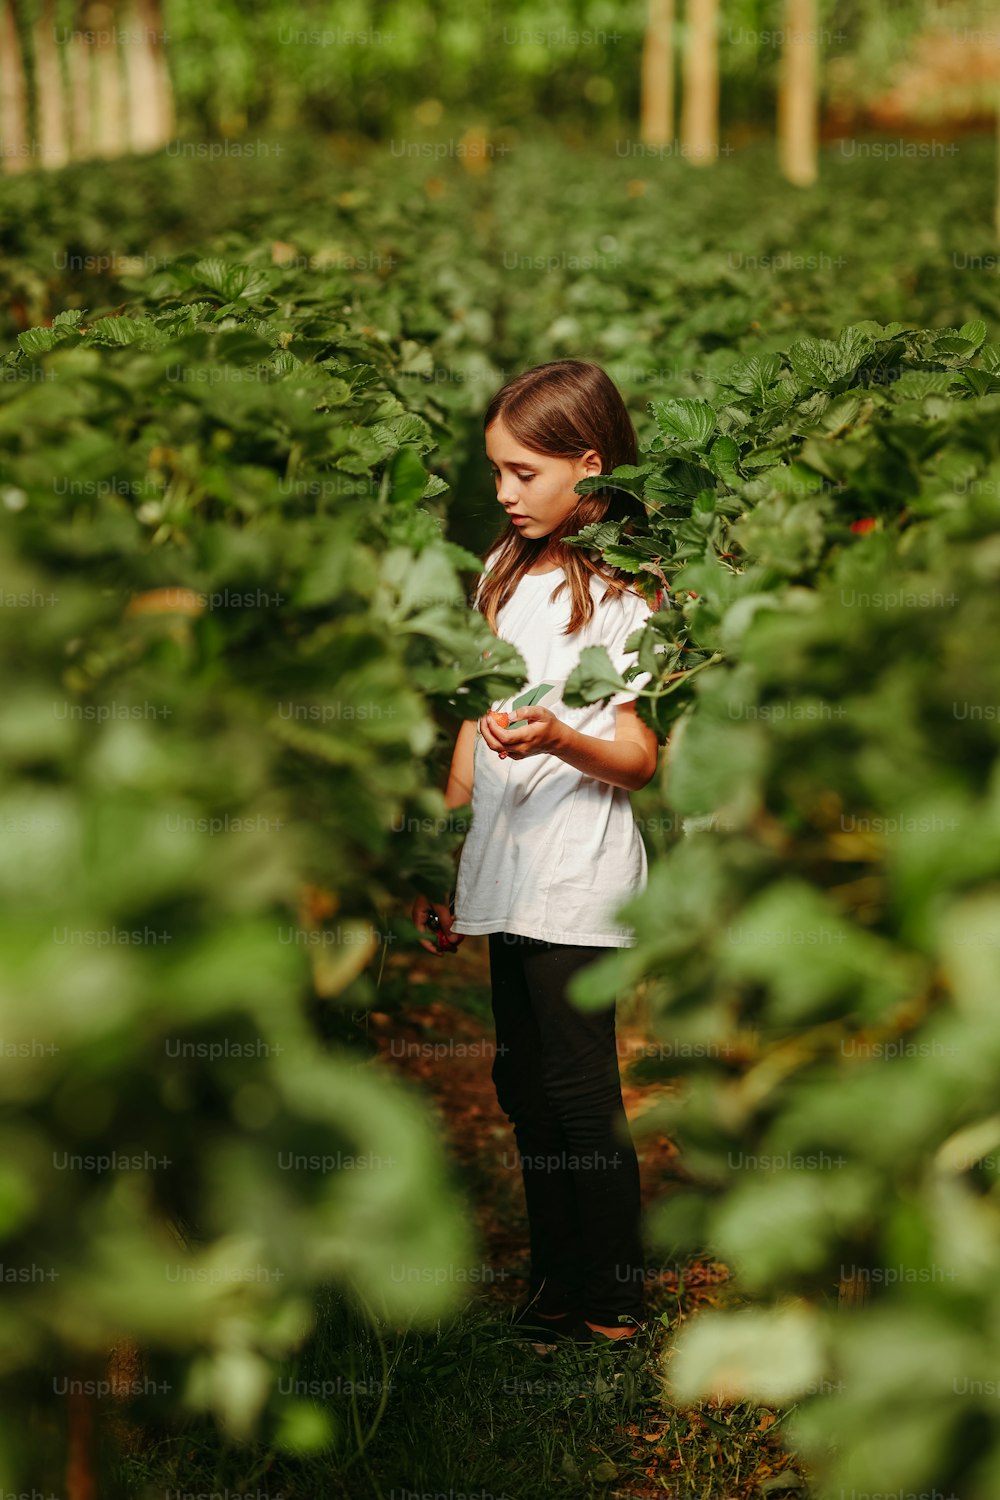 Une petite fille debout dans un champ de plantes vertes